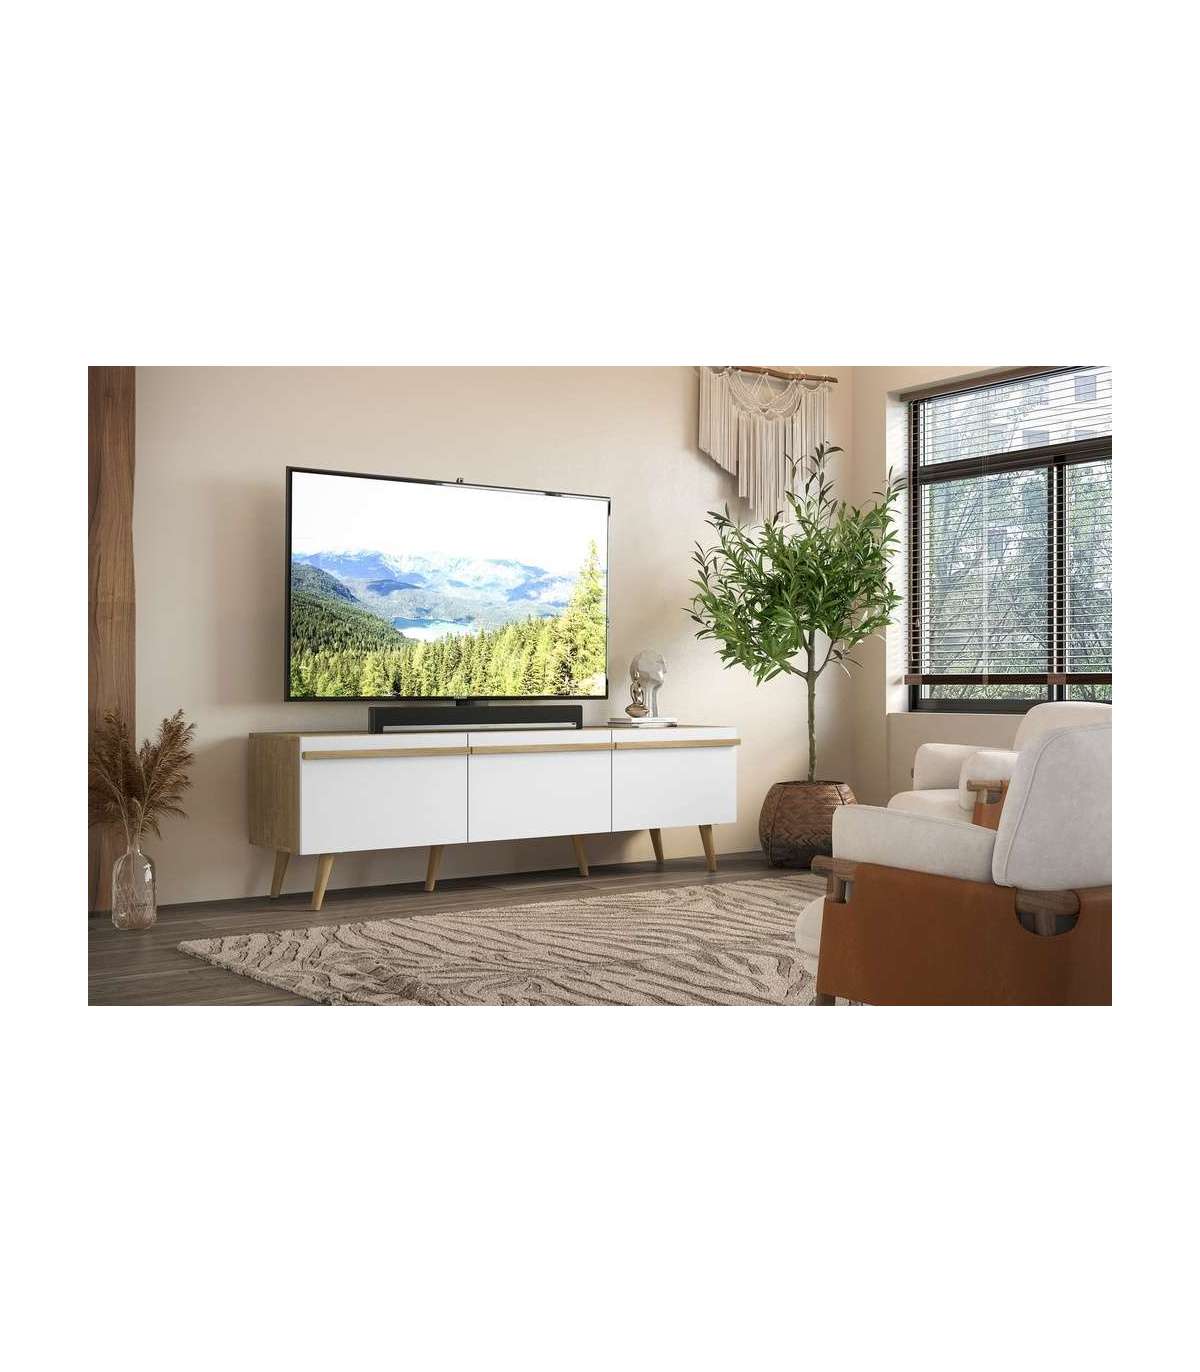 Mueble de TV blanco para salón  Muebles para tv modernos, Muebles para tv,  Muebles para televisores